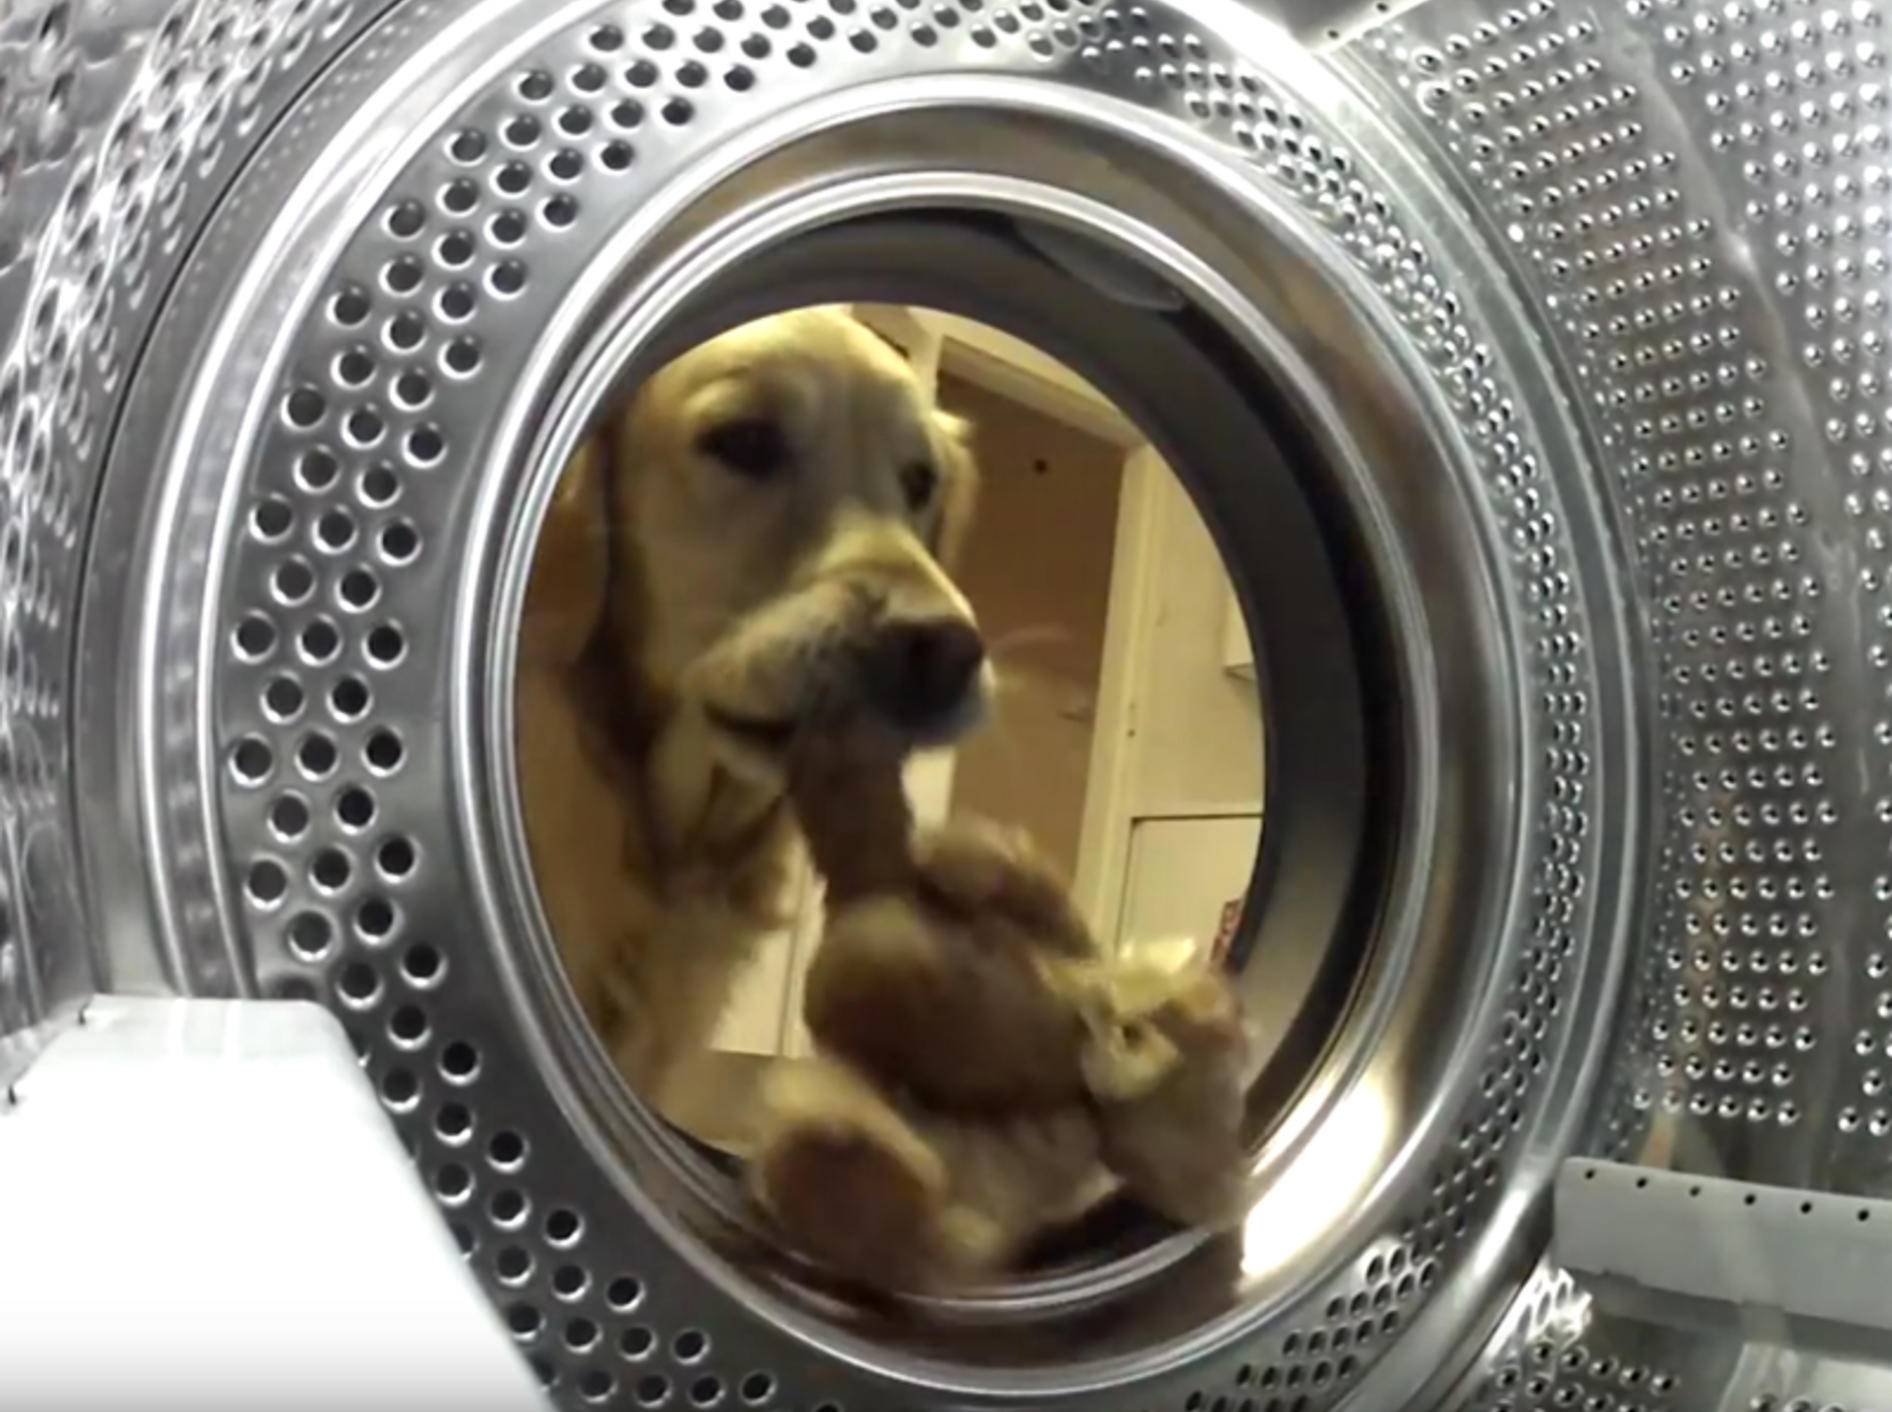 Golden Retriever rettet seinen Teddy aus der Waschmaschine – YouTube / simon bromfield